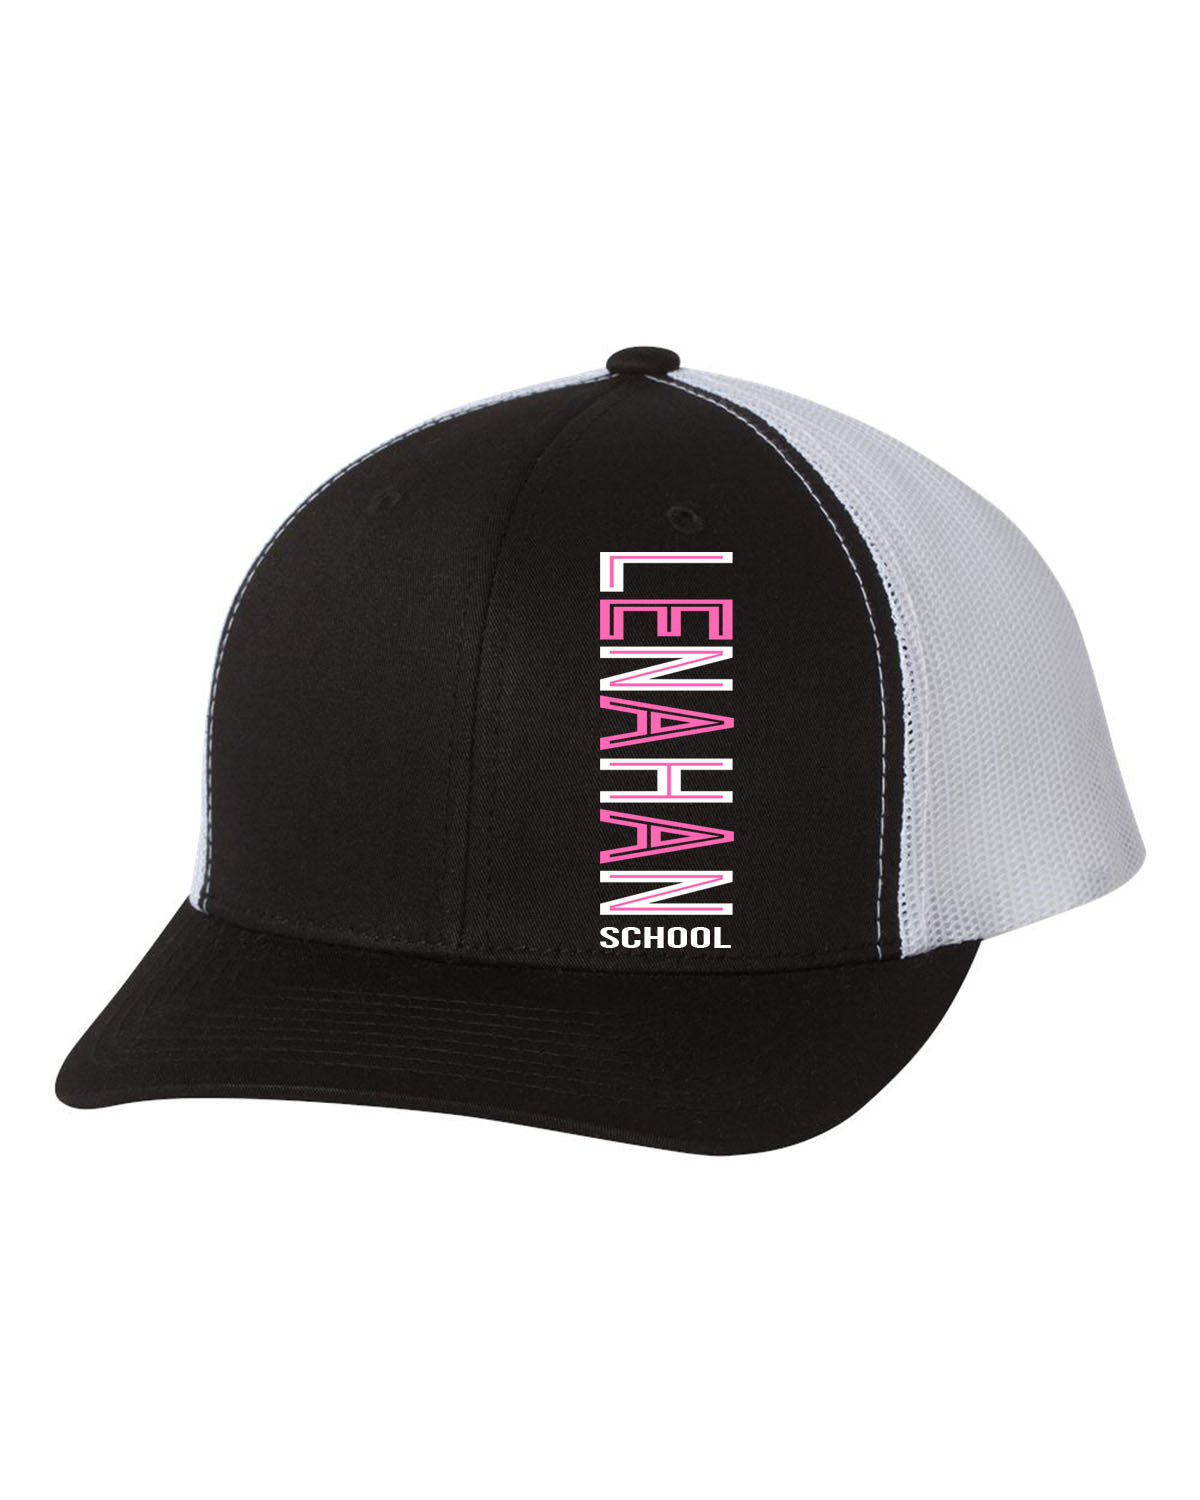 Lenahan Dance Design 3 Trucker Hat